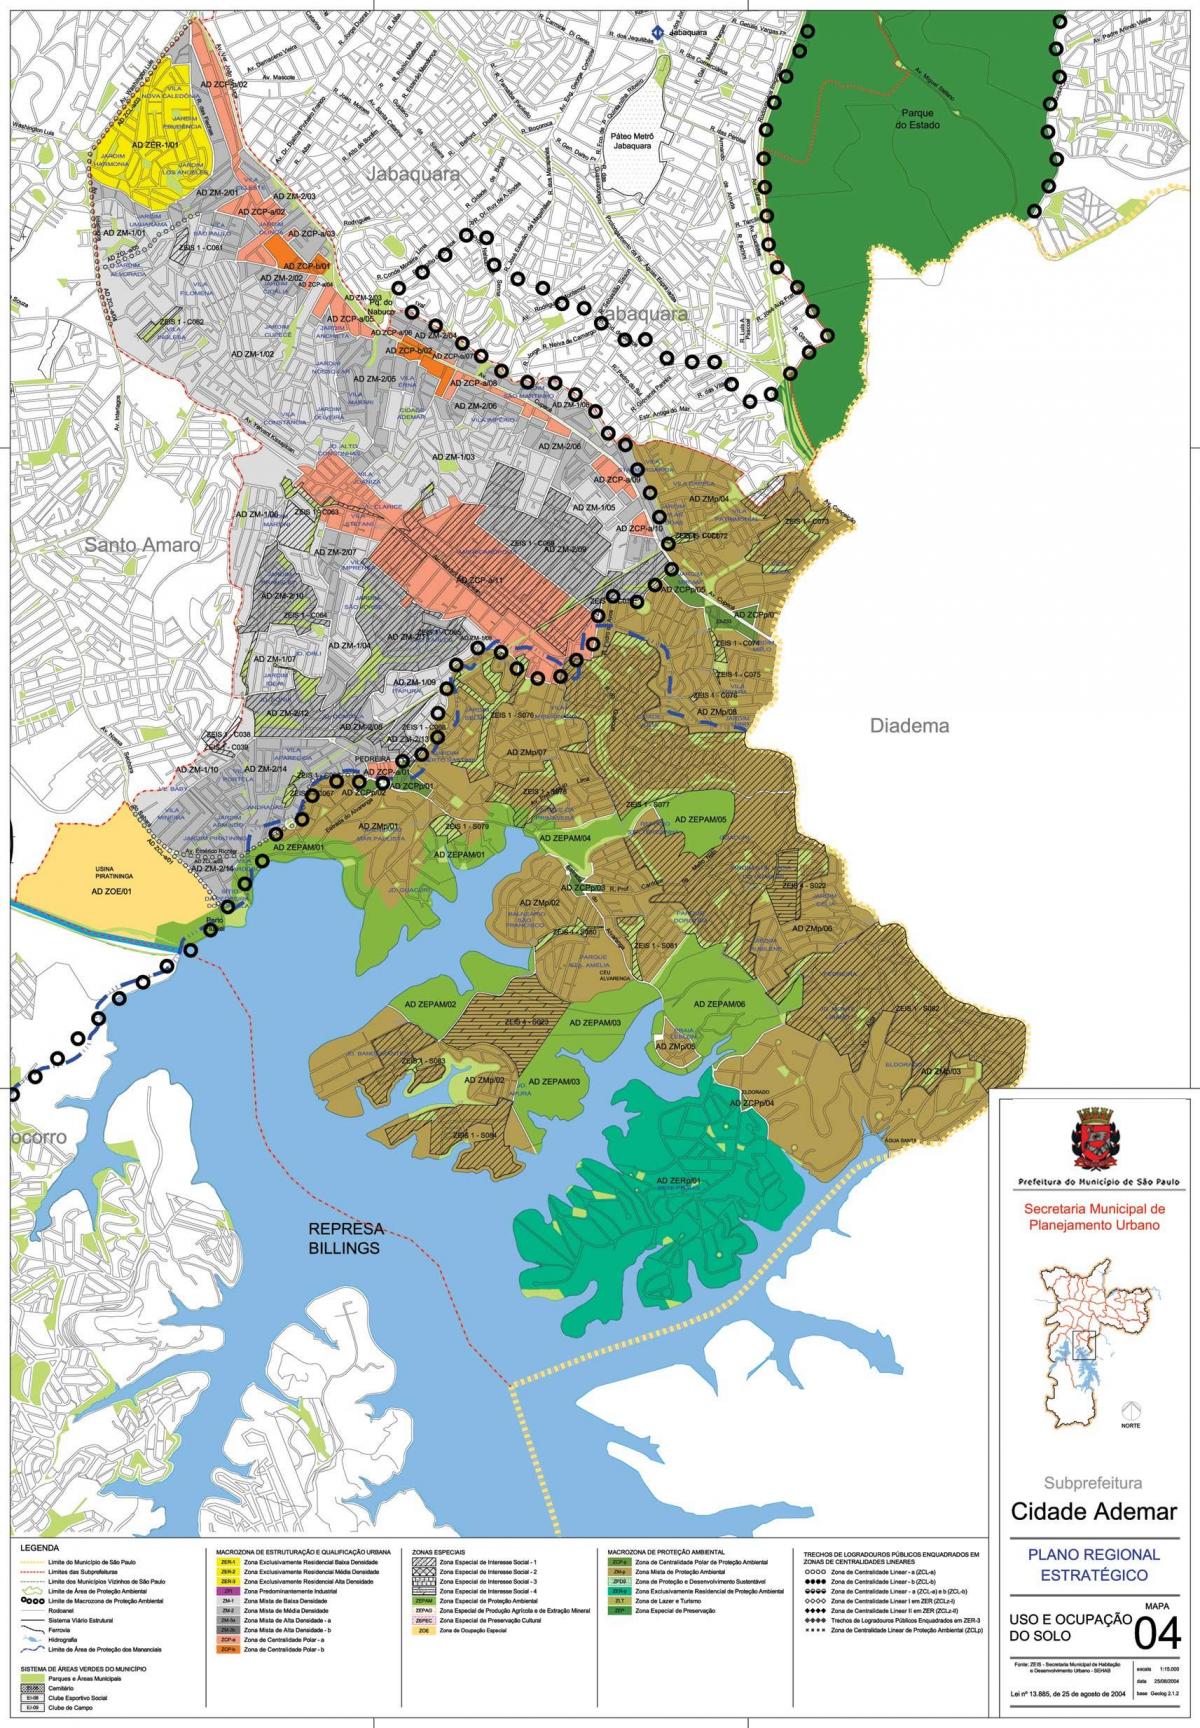 Karta Сидаде Адемаре Sao Paulo- oduzimanje zemljišta